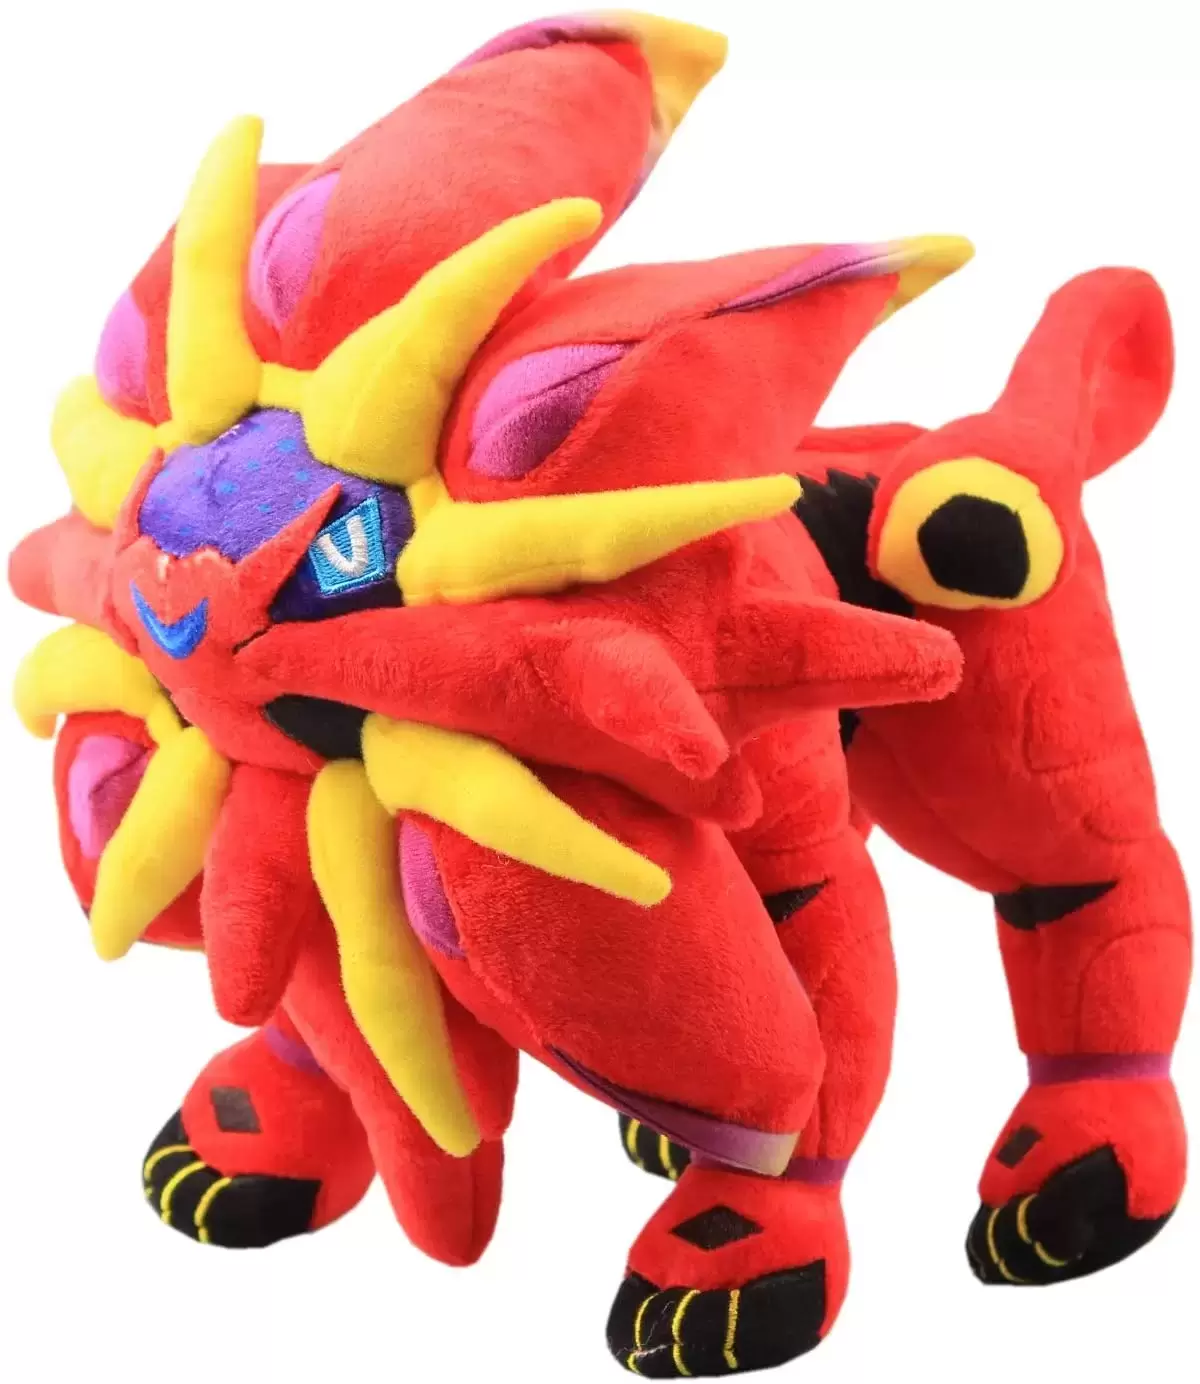 New Pokemon Large size Solgaleo Plush toy High quality Soft